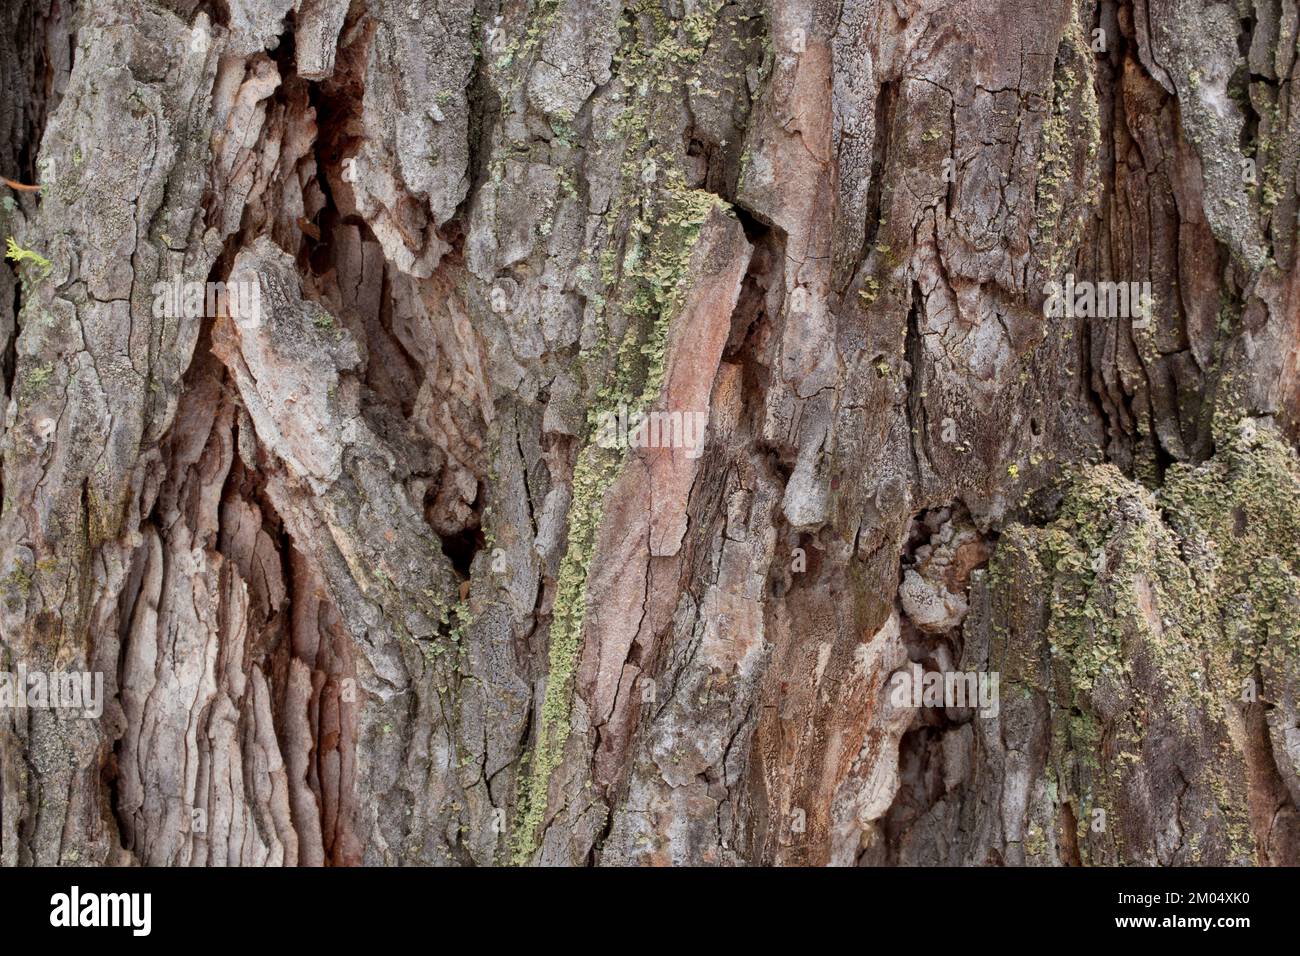 Tree Anatomy: Bark